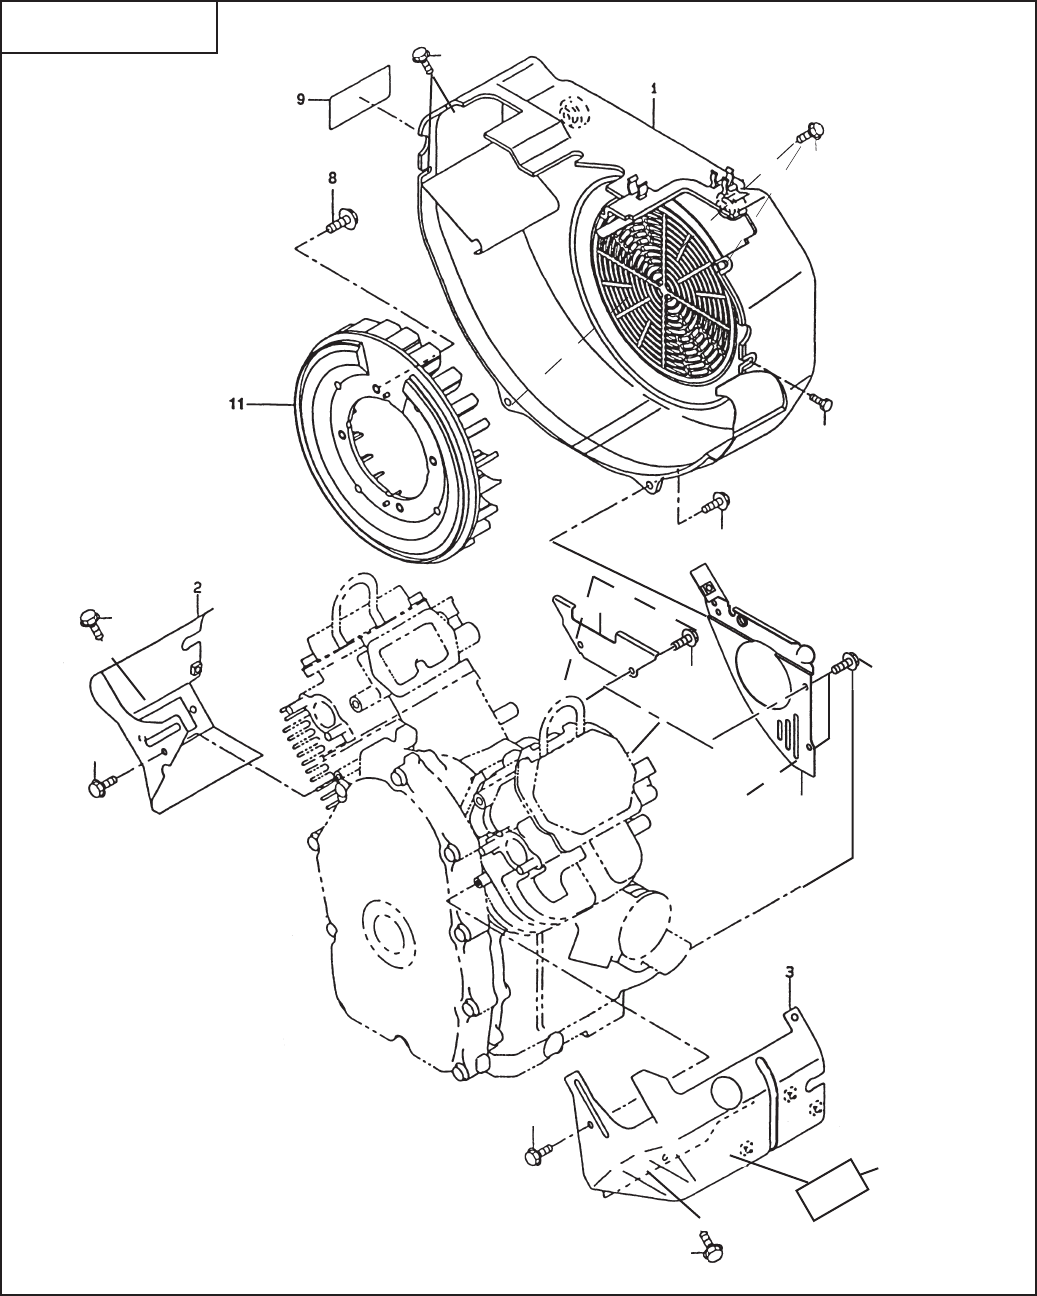 OHV220 Miller W FE Rev 0905 EH64 Welder Parts Manual